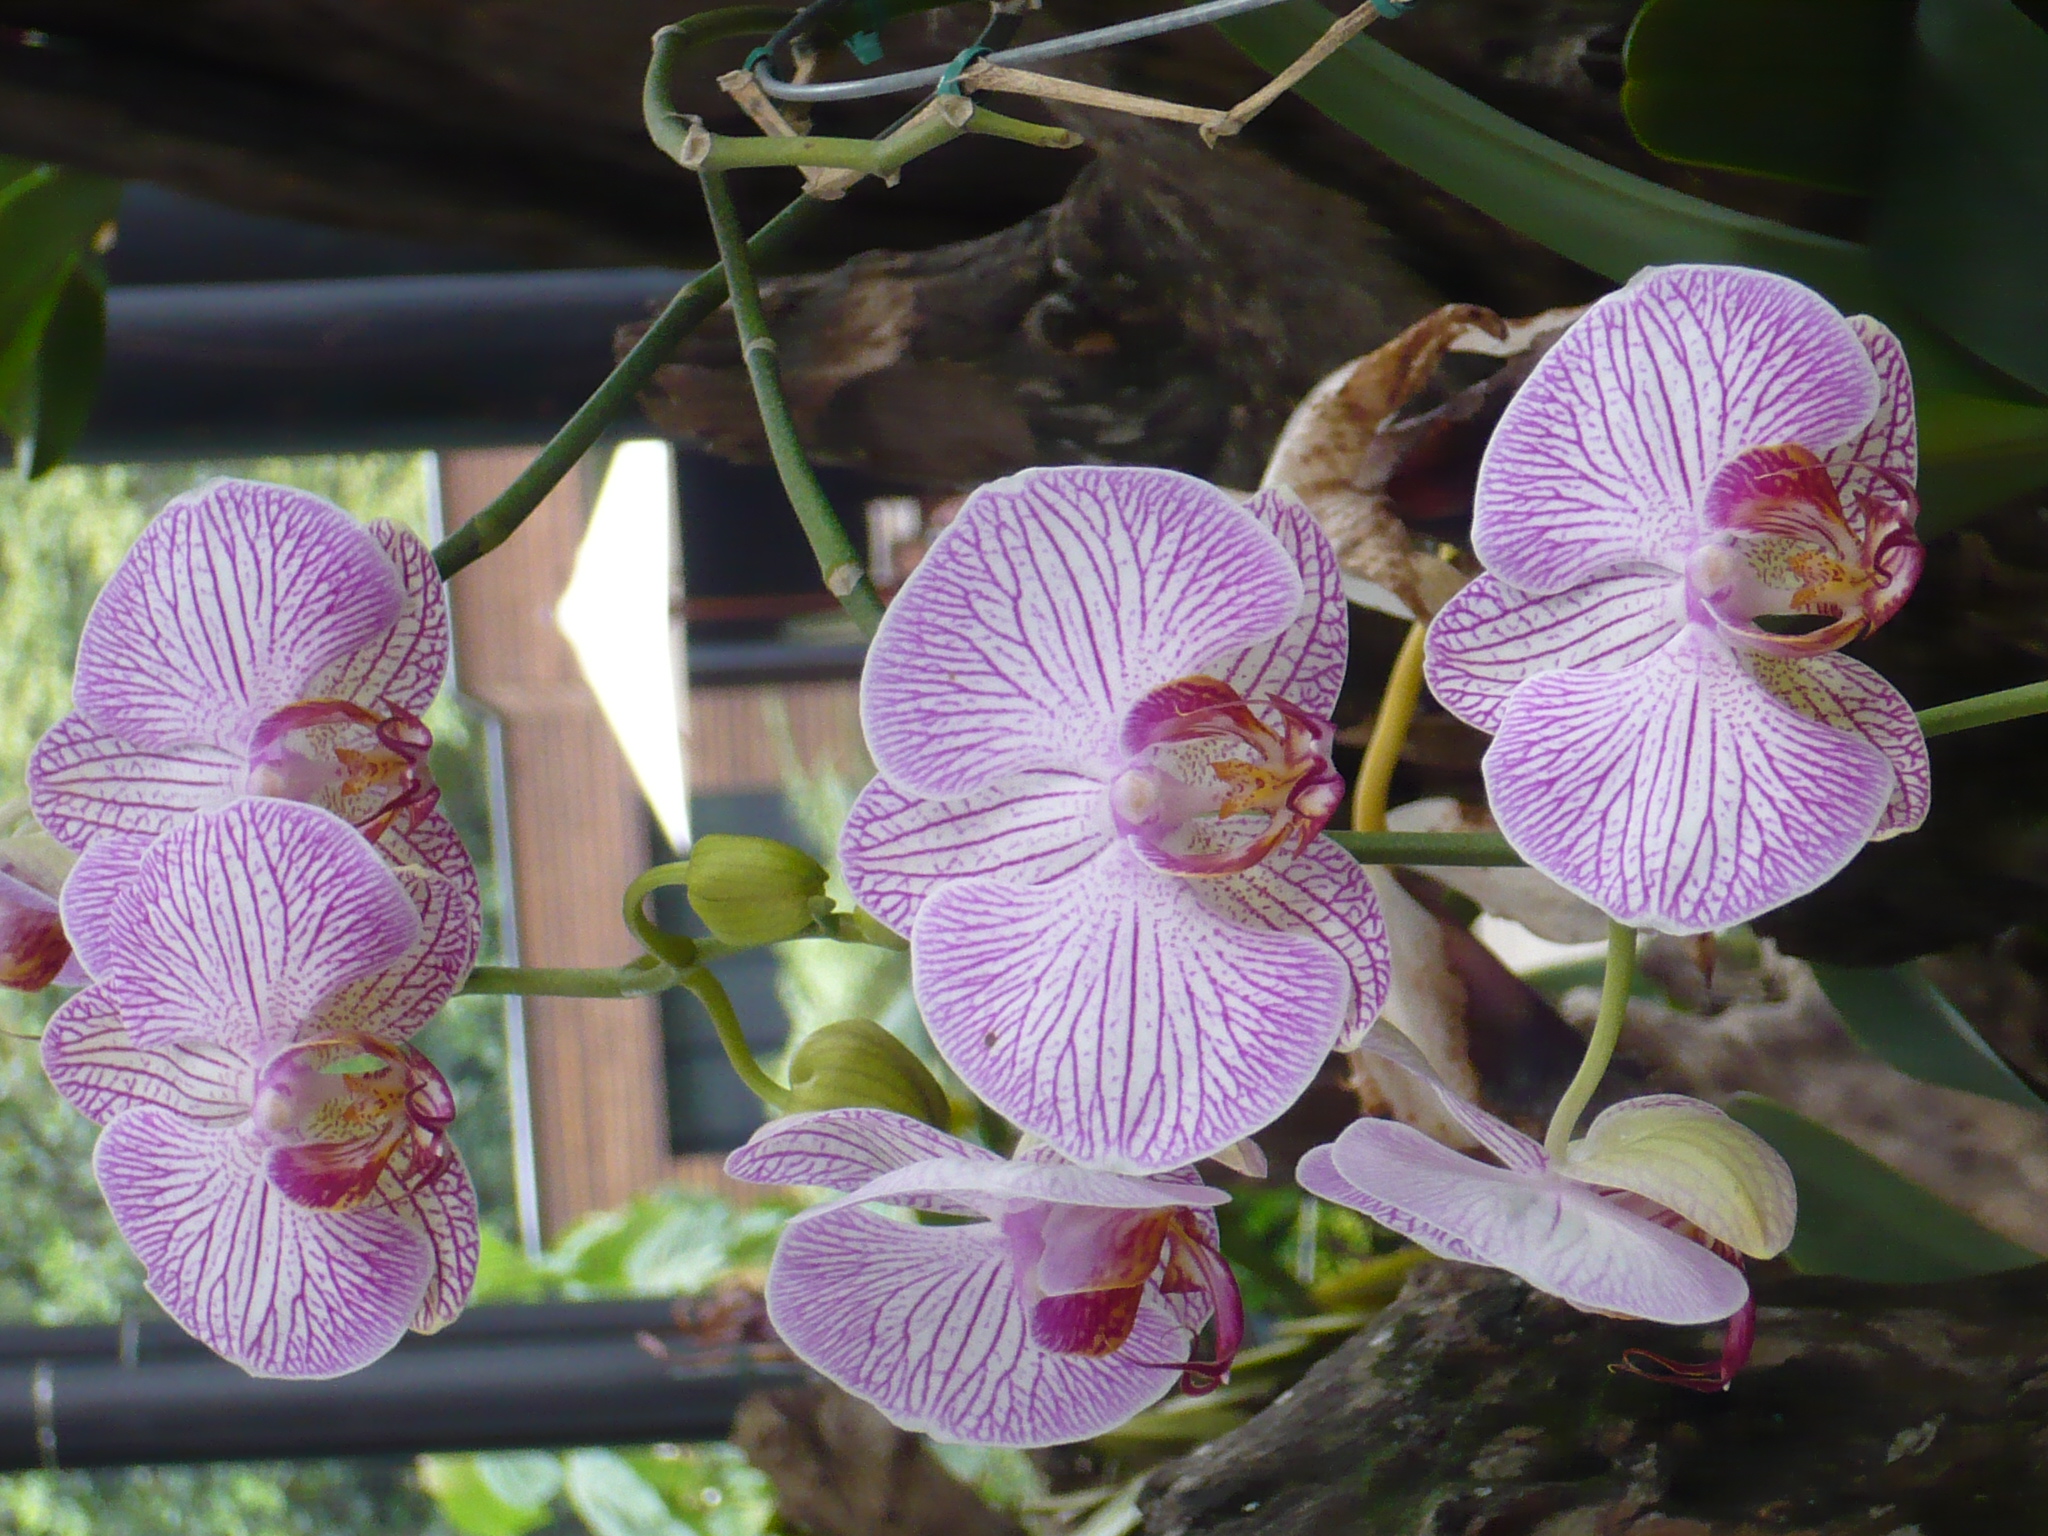 File:Orquídea-Medellin-1.jpg - Wikimedia Commons